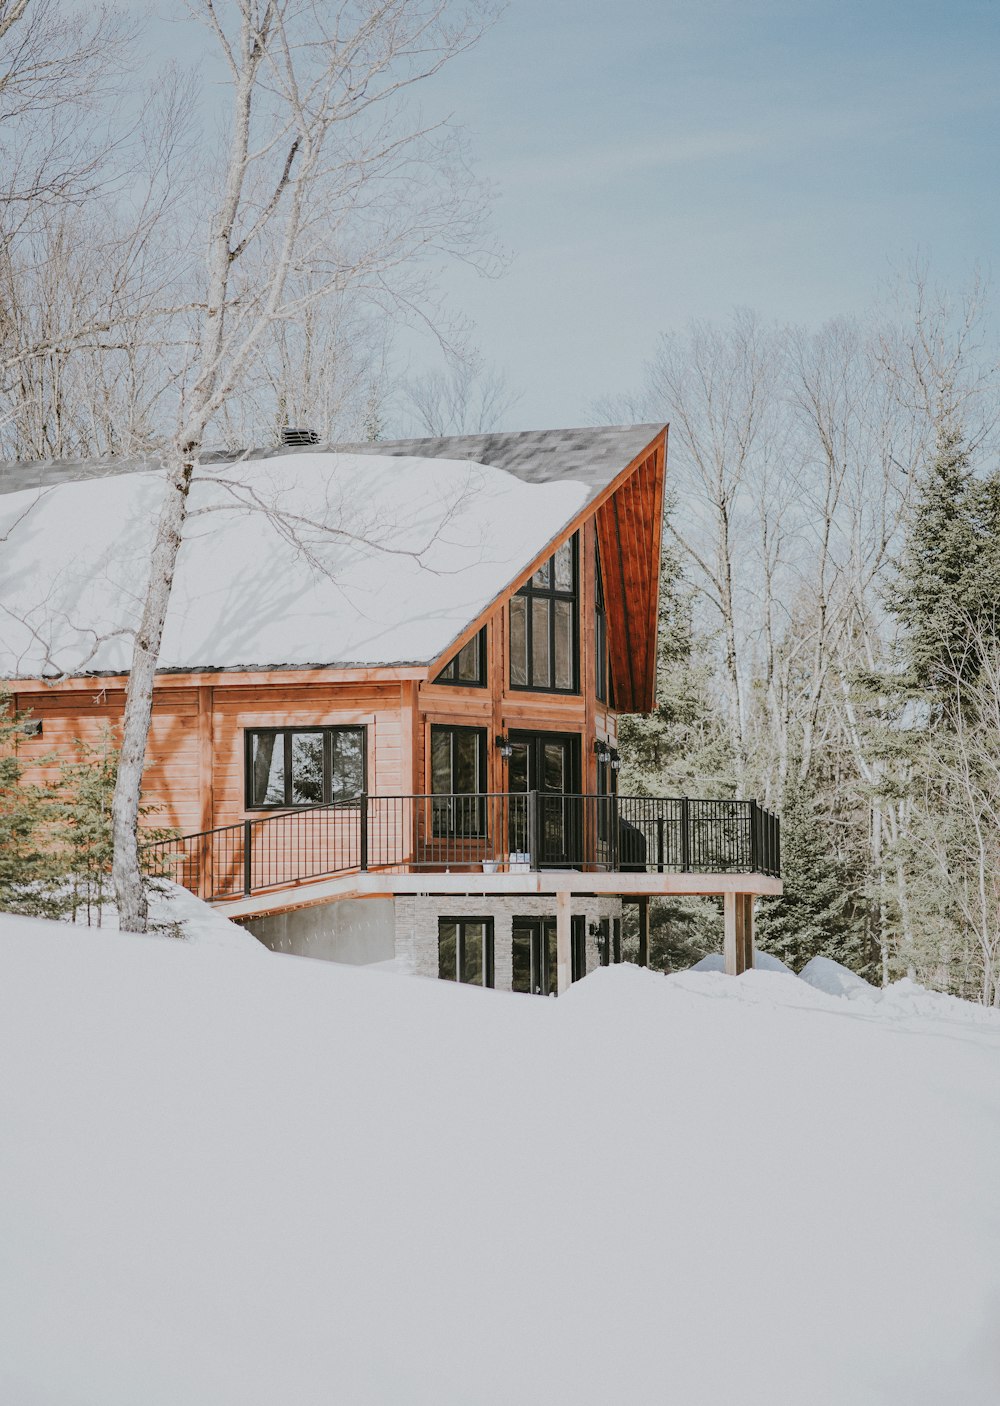 Casa de madera beige y blanca rodeada de campo nevado durante el día